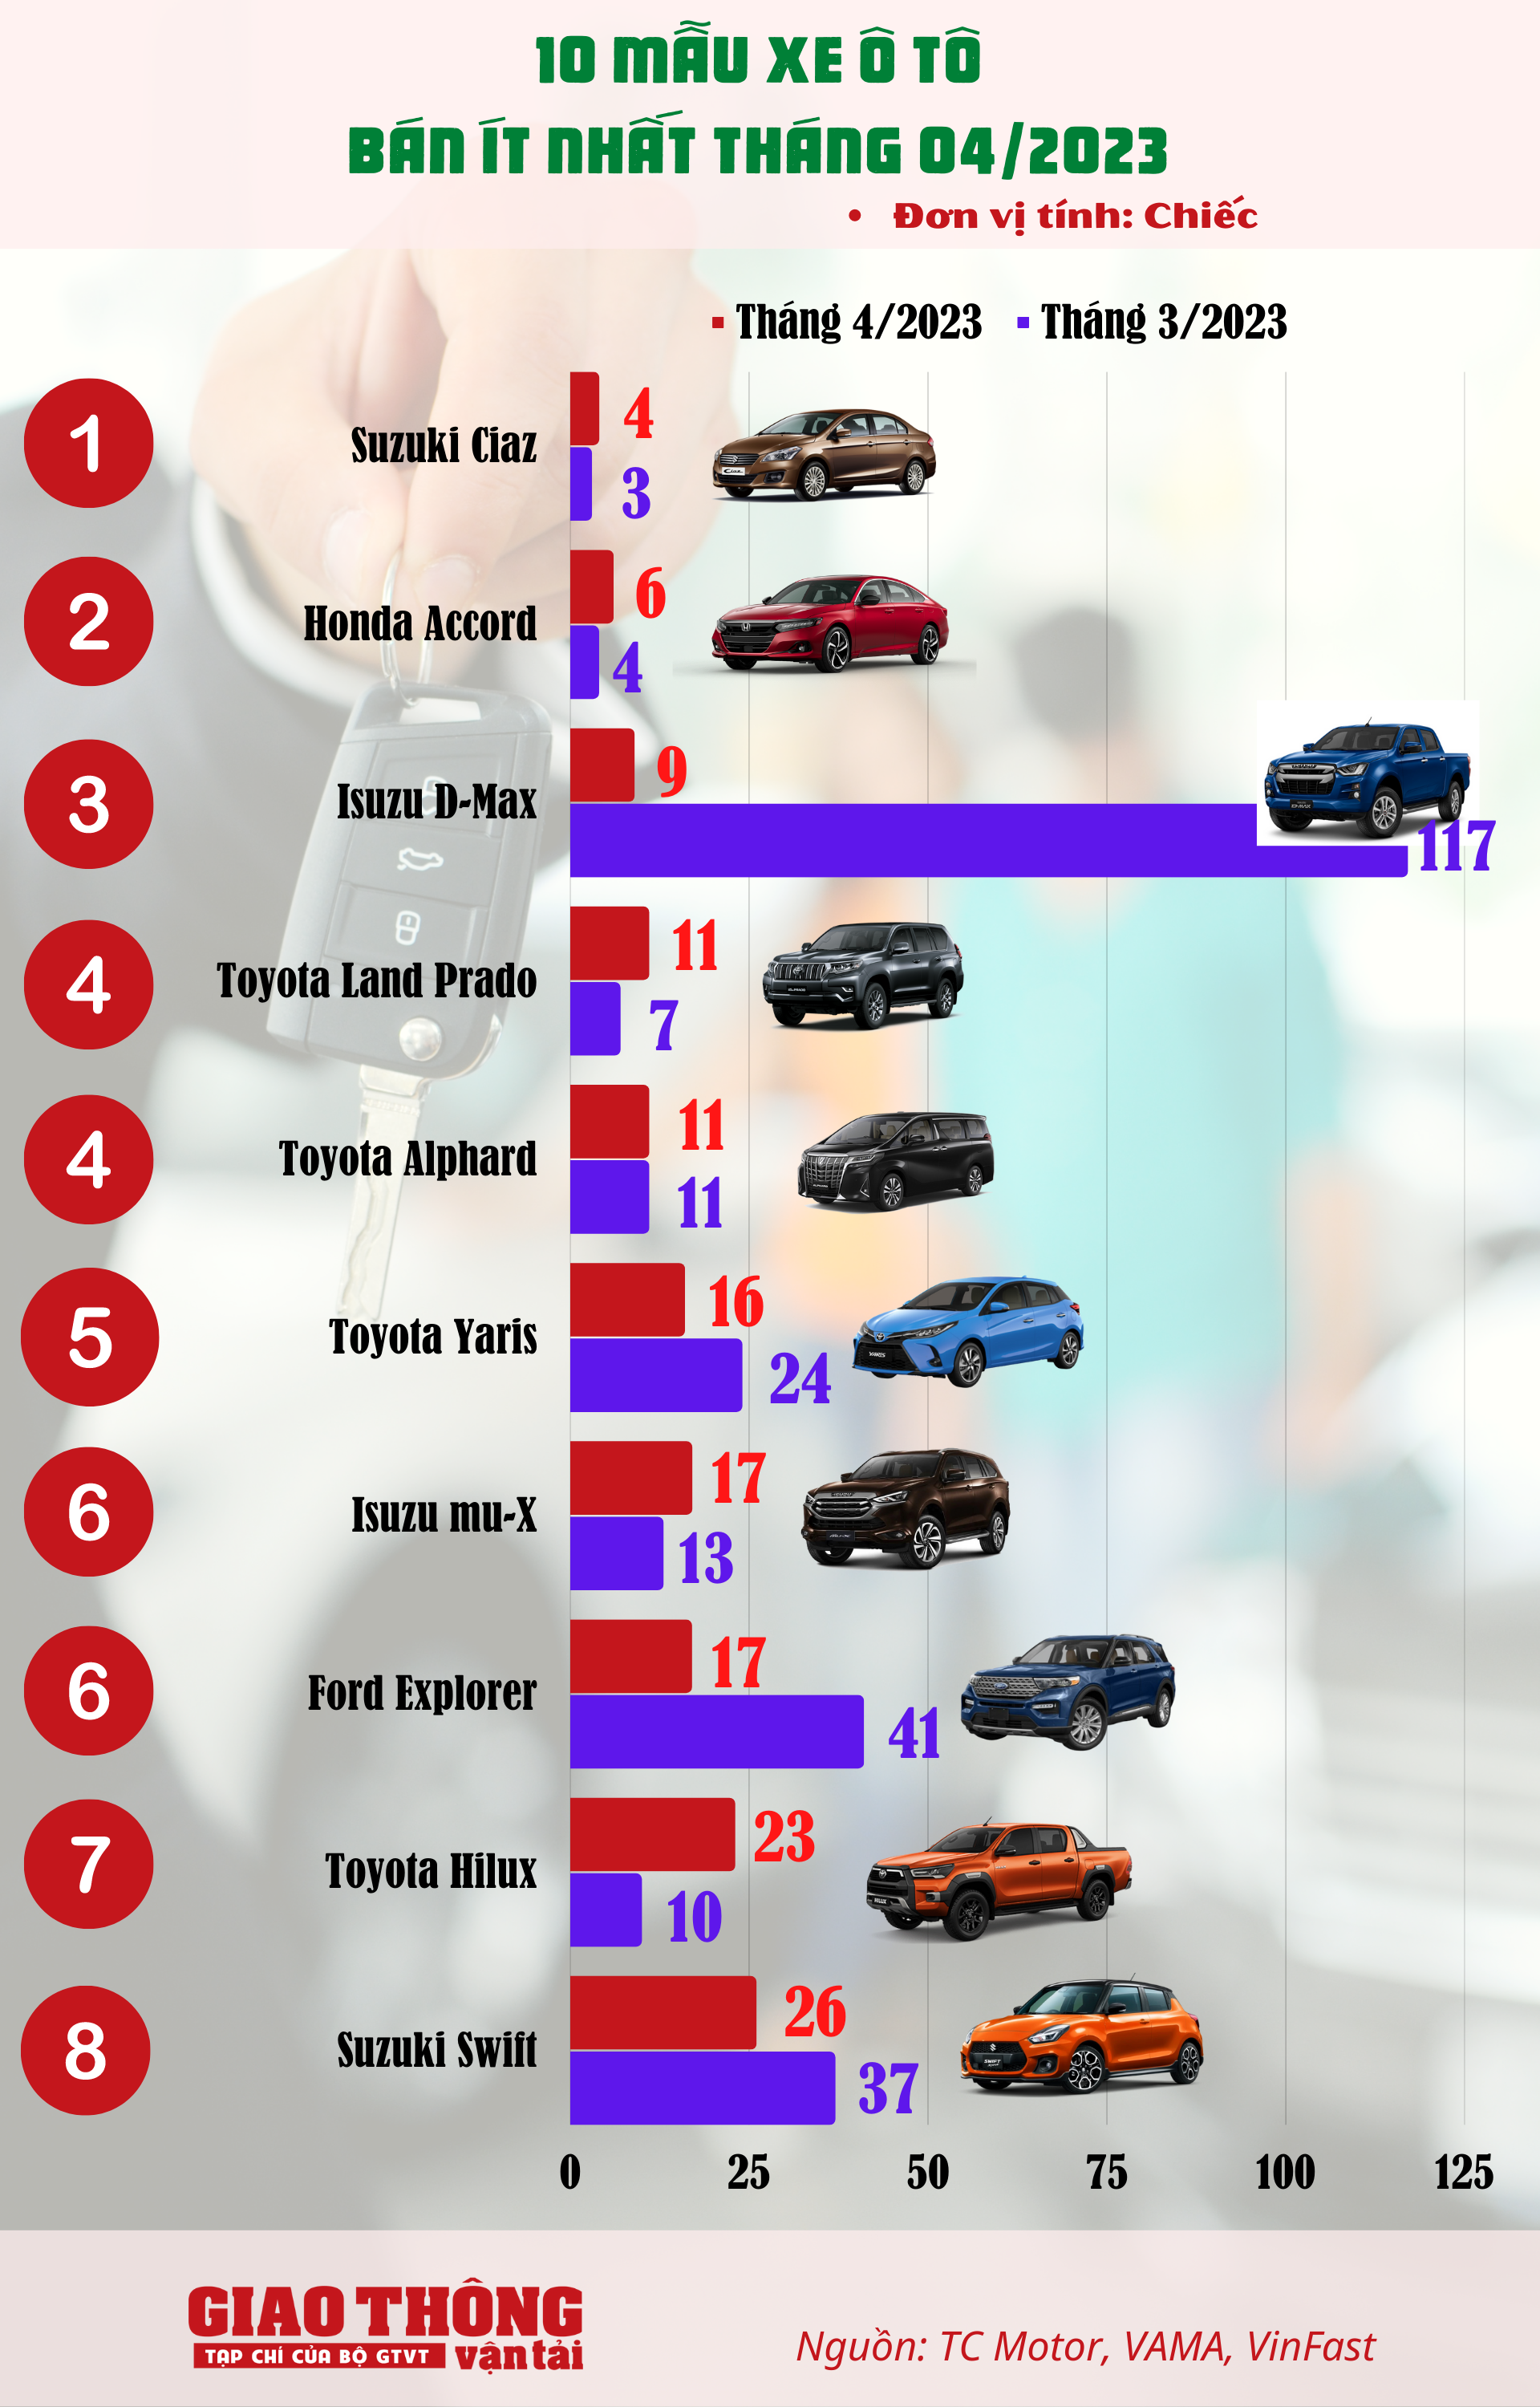 10 ô tô bán ít nhất tháng 4/2023: Toyota Hilux chưa thể thoát ế - Ảnh 1.